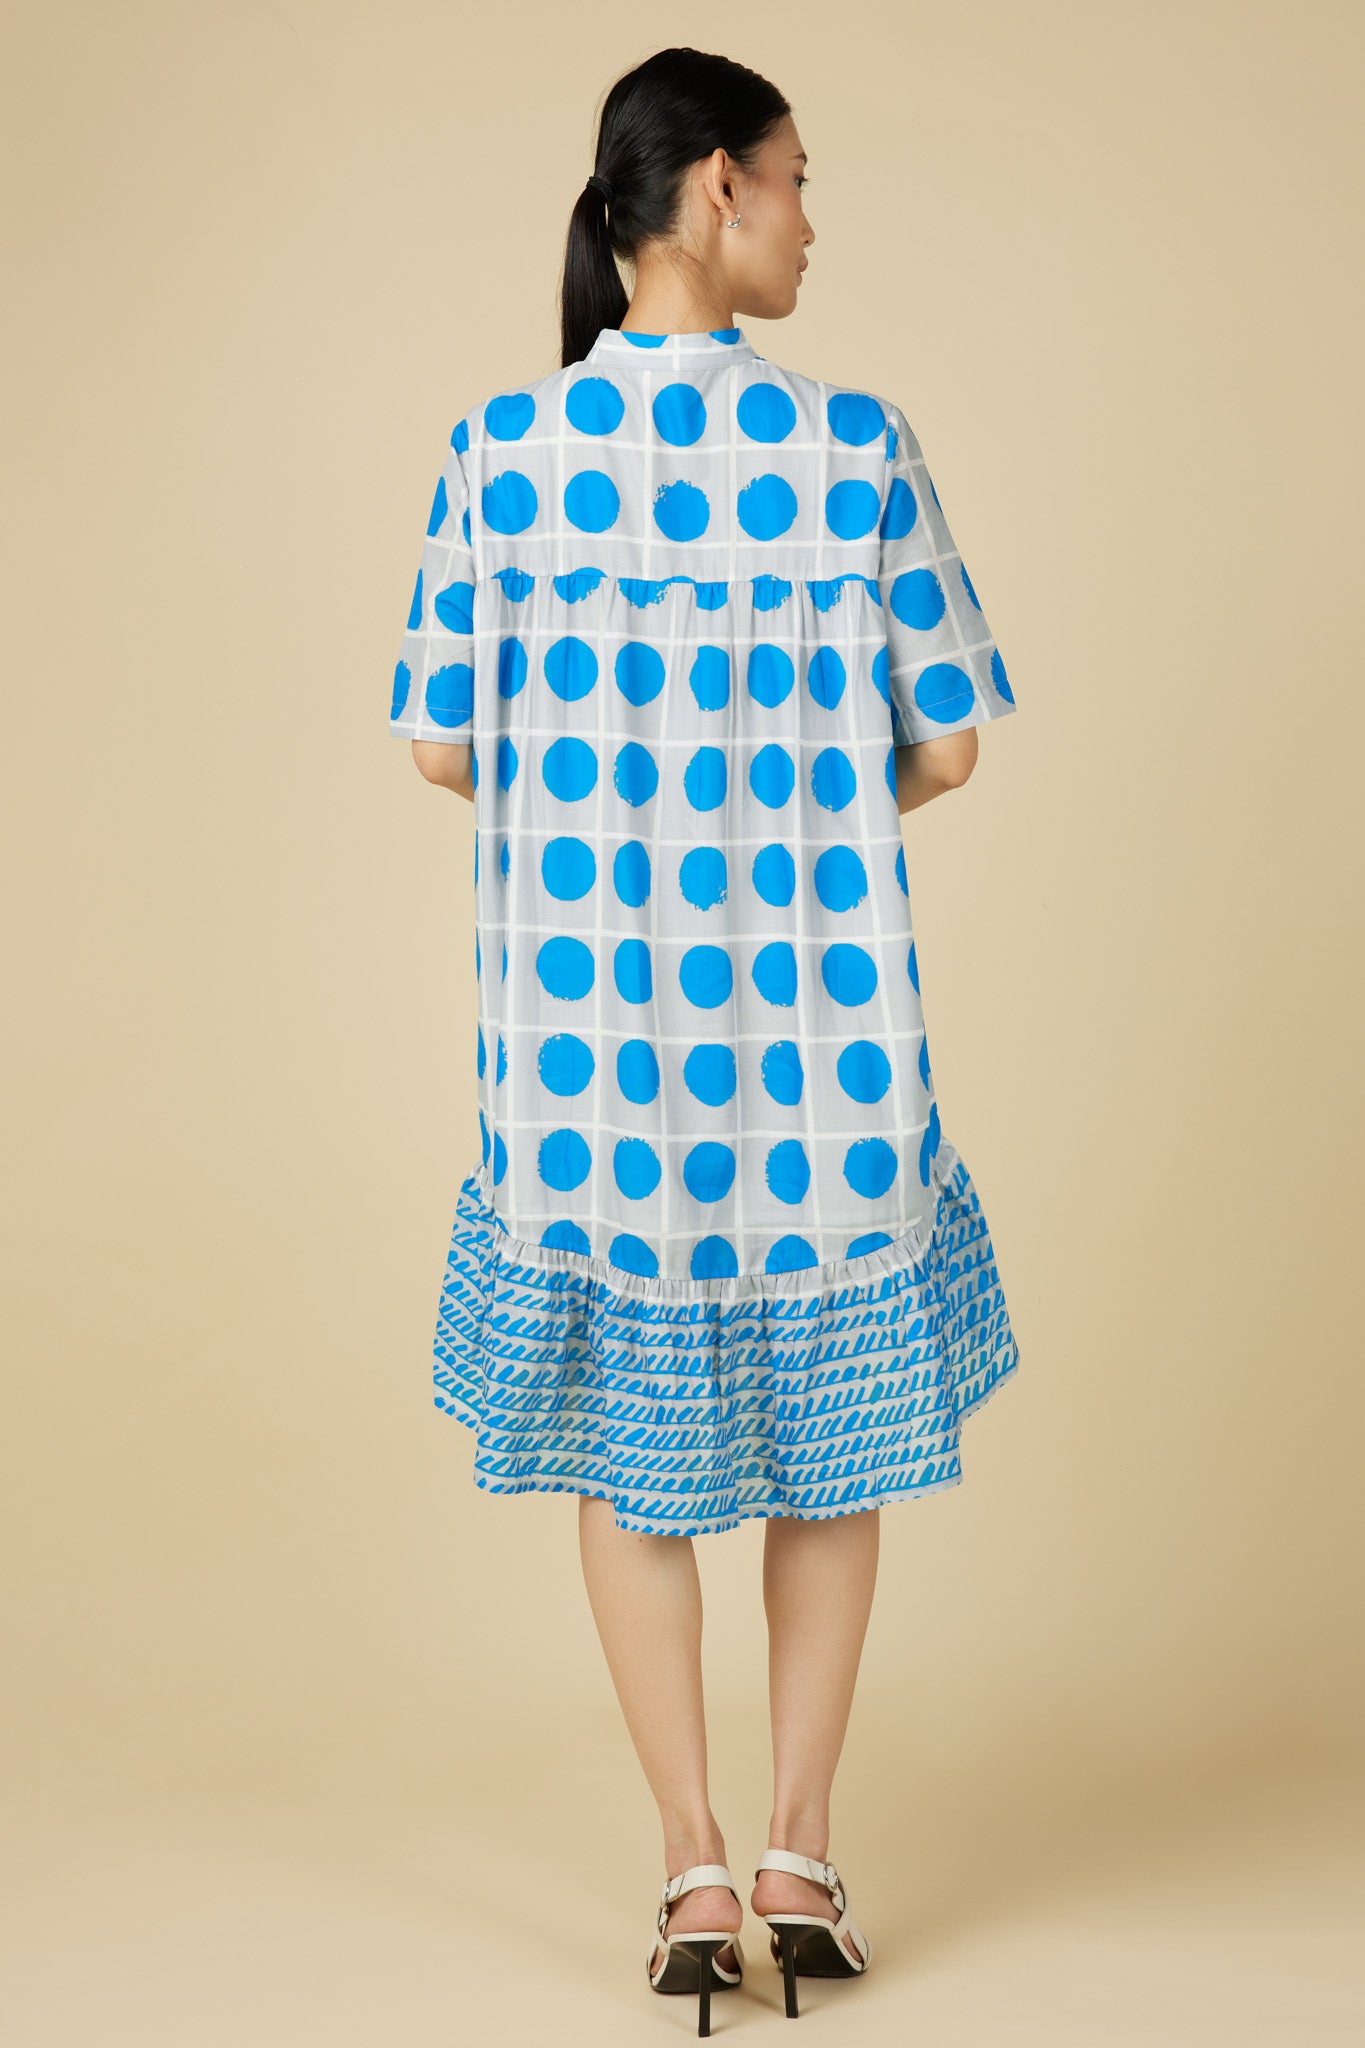 Celeste Cheongsam Dress in Blue Polka Dots